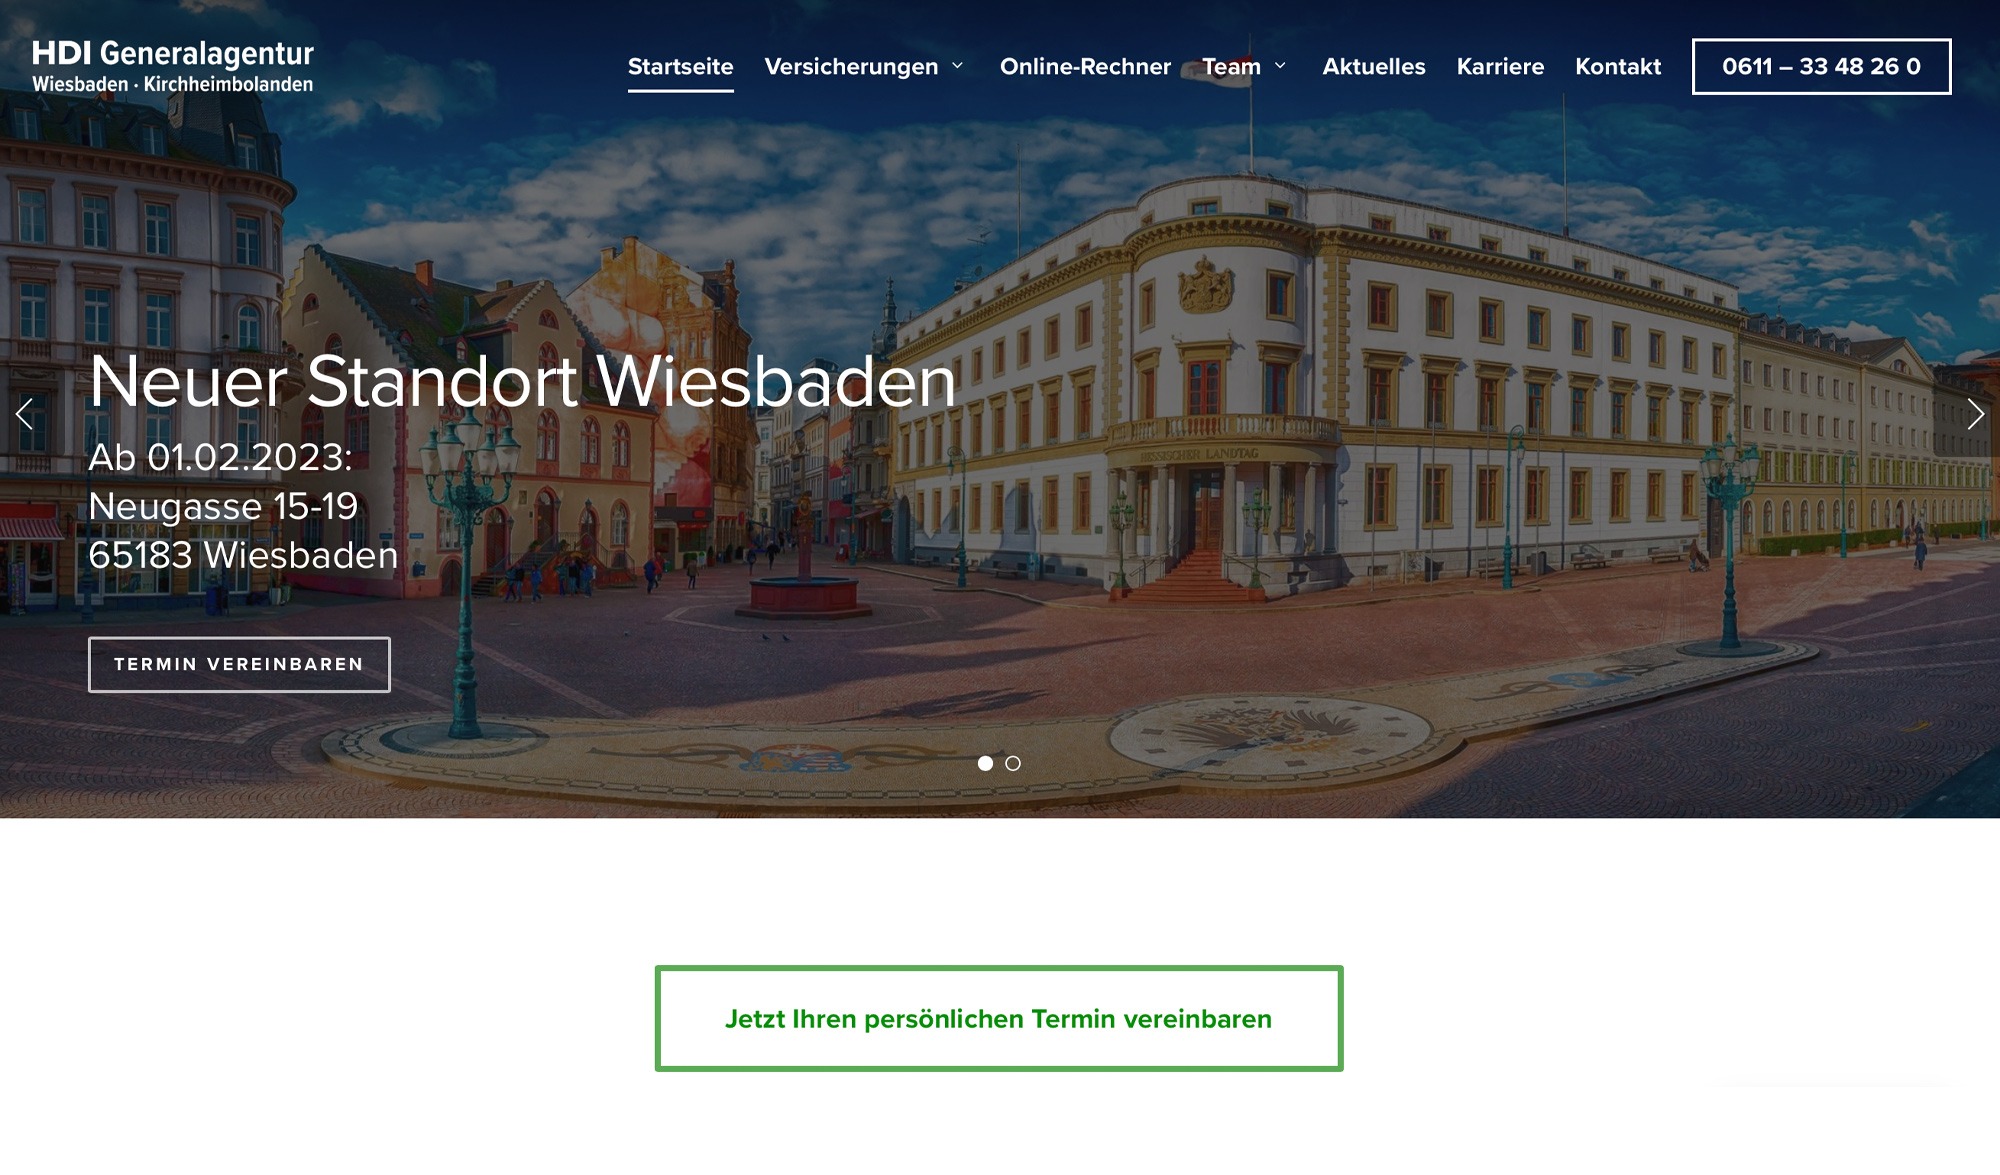 Webdesign und Umsetzung für die Versicherung aus Wiesbaden